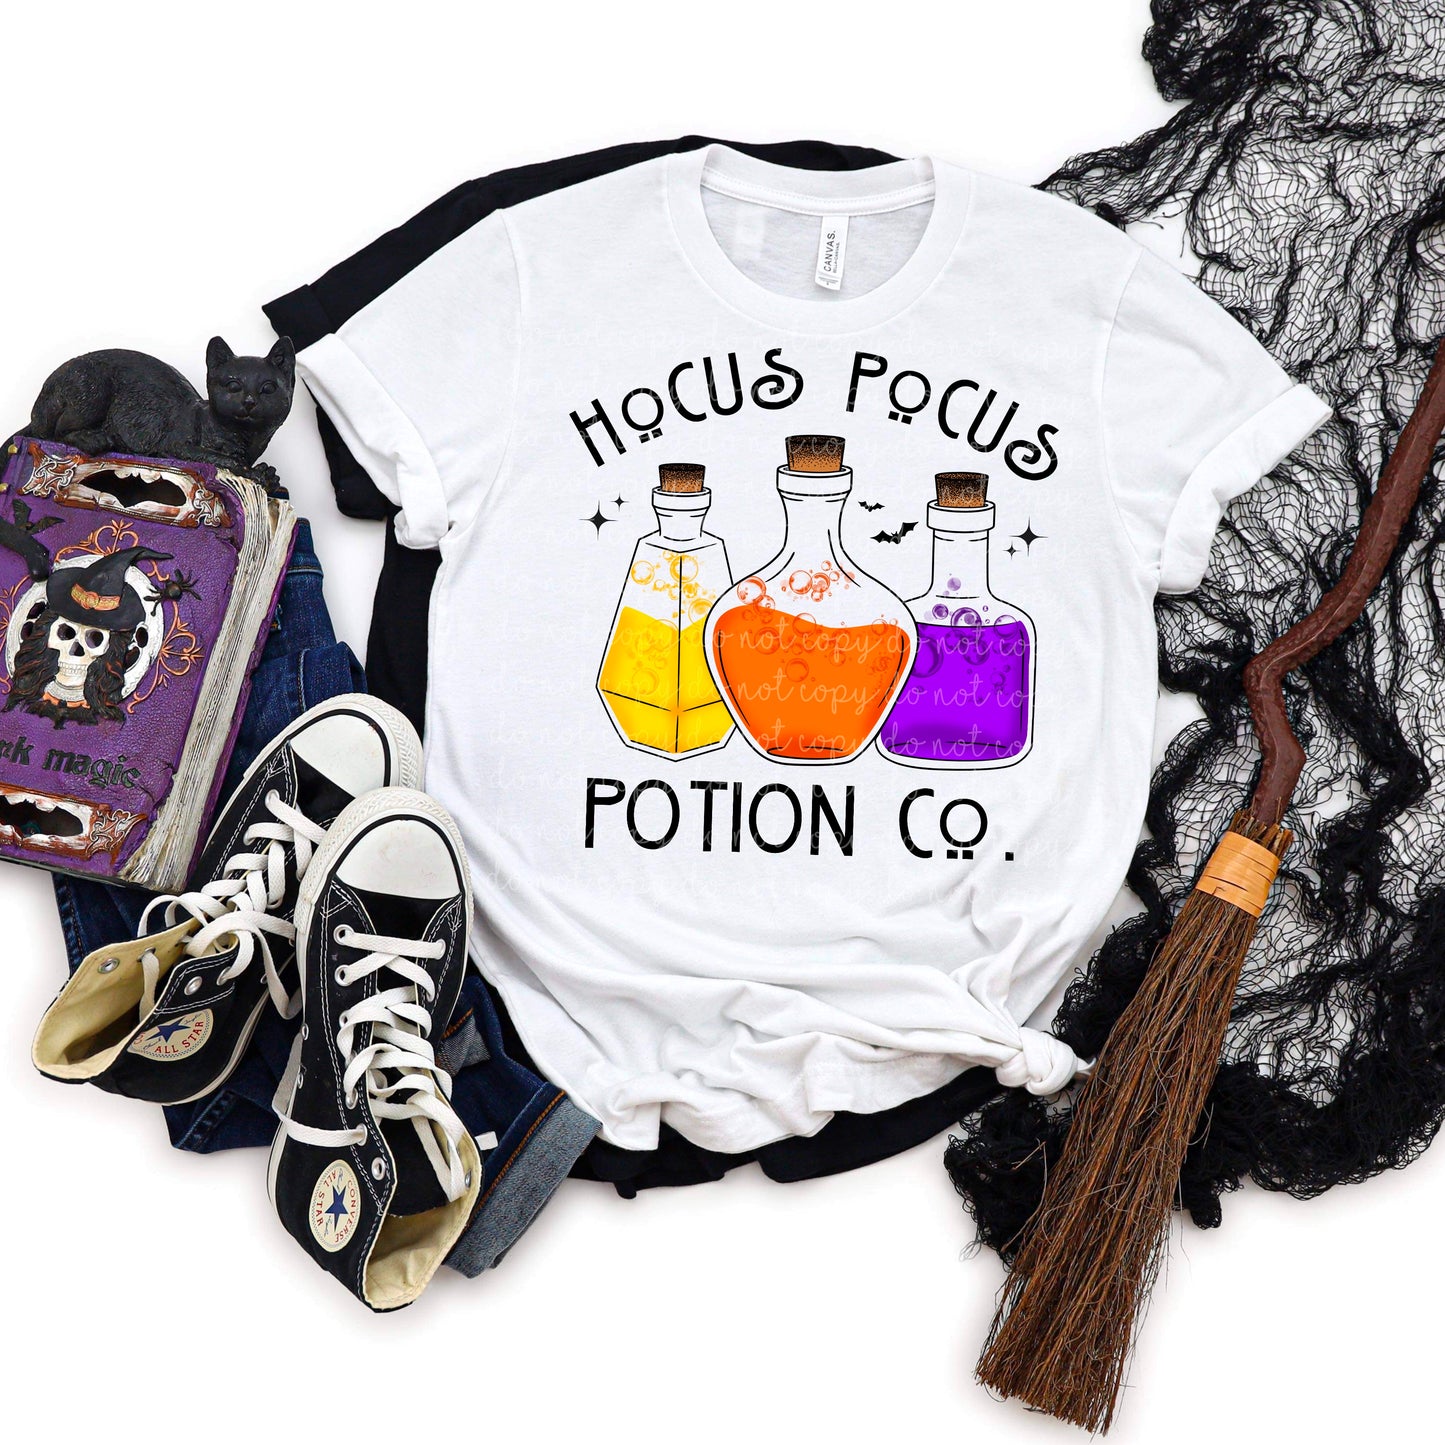 Hocus Pocus Potion Co Sublimation Transfer